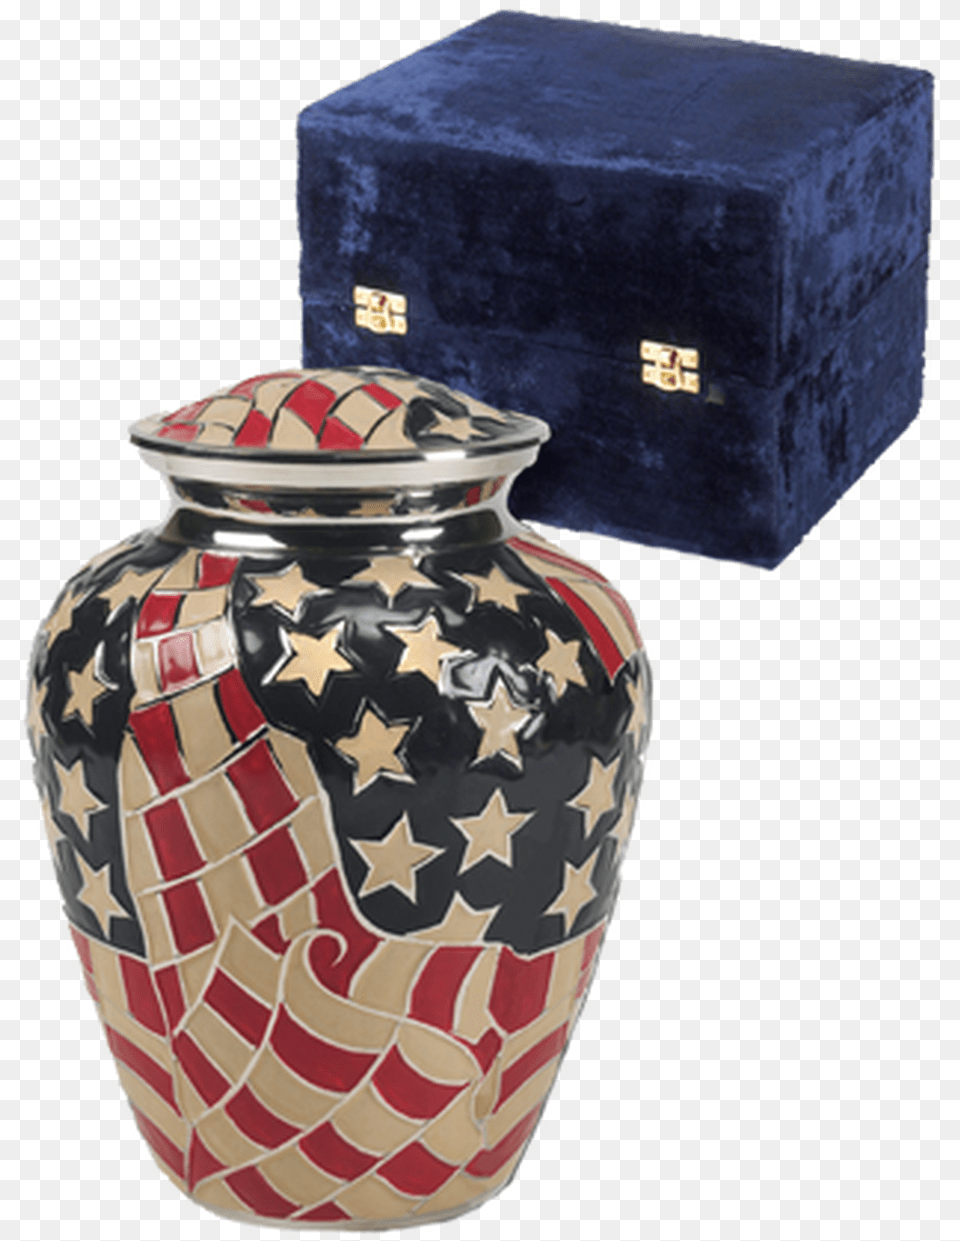 Patriotic Americana Cremation Urn For Ashes Urn, Jar, Pottery, Art, Porcelain Free Transparent Png